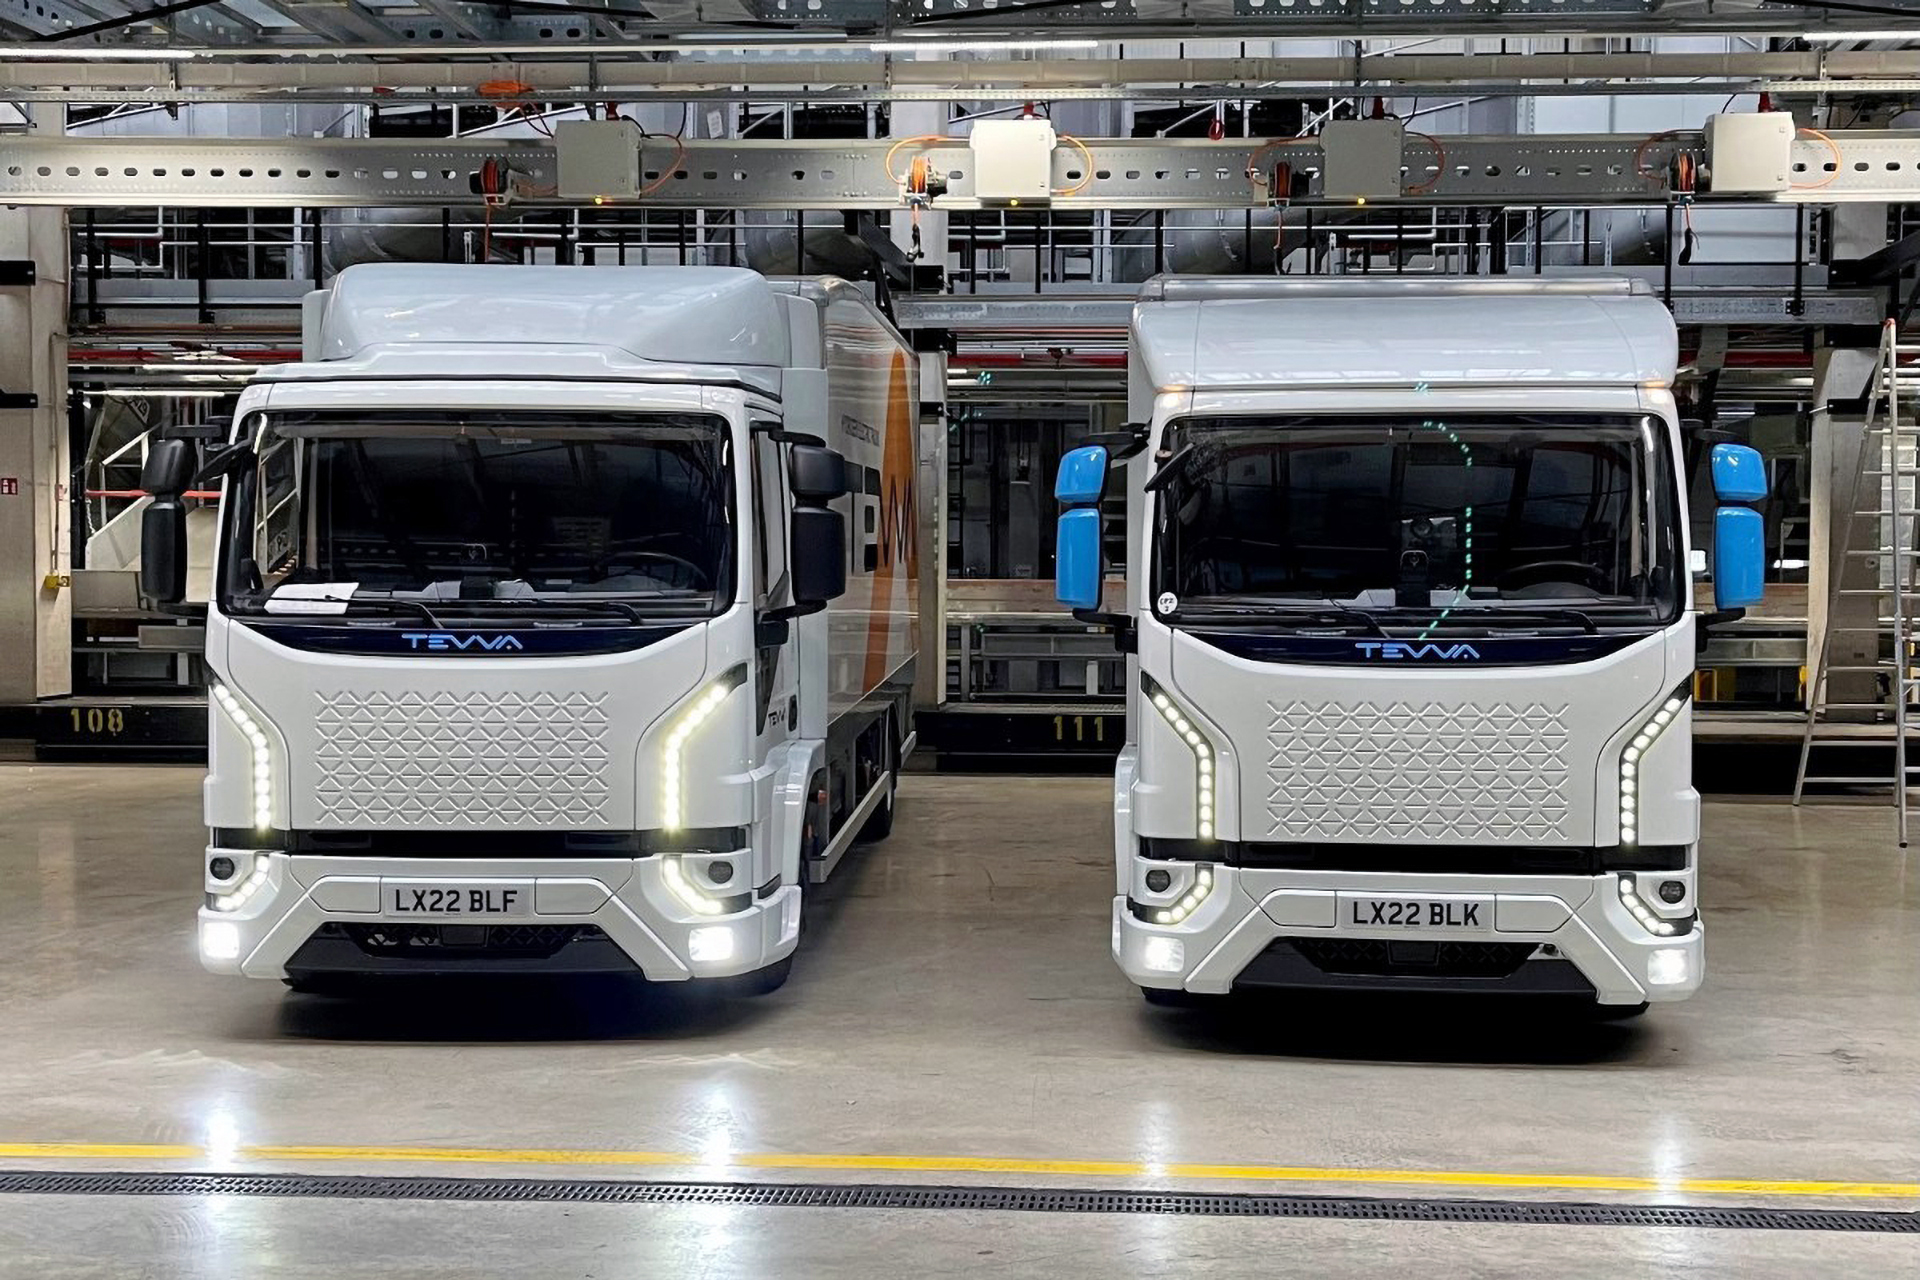 Vem concorrência Pesada Nova marca de caminhões Tevva, começa produzir caminhões leves elétricos e a célula a combustível na Inglaterra